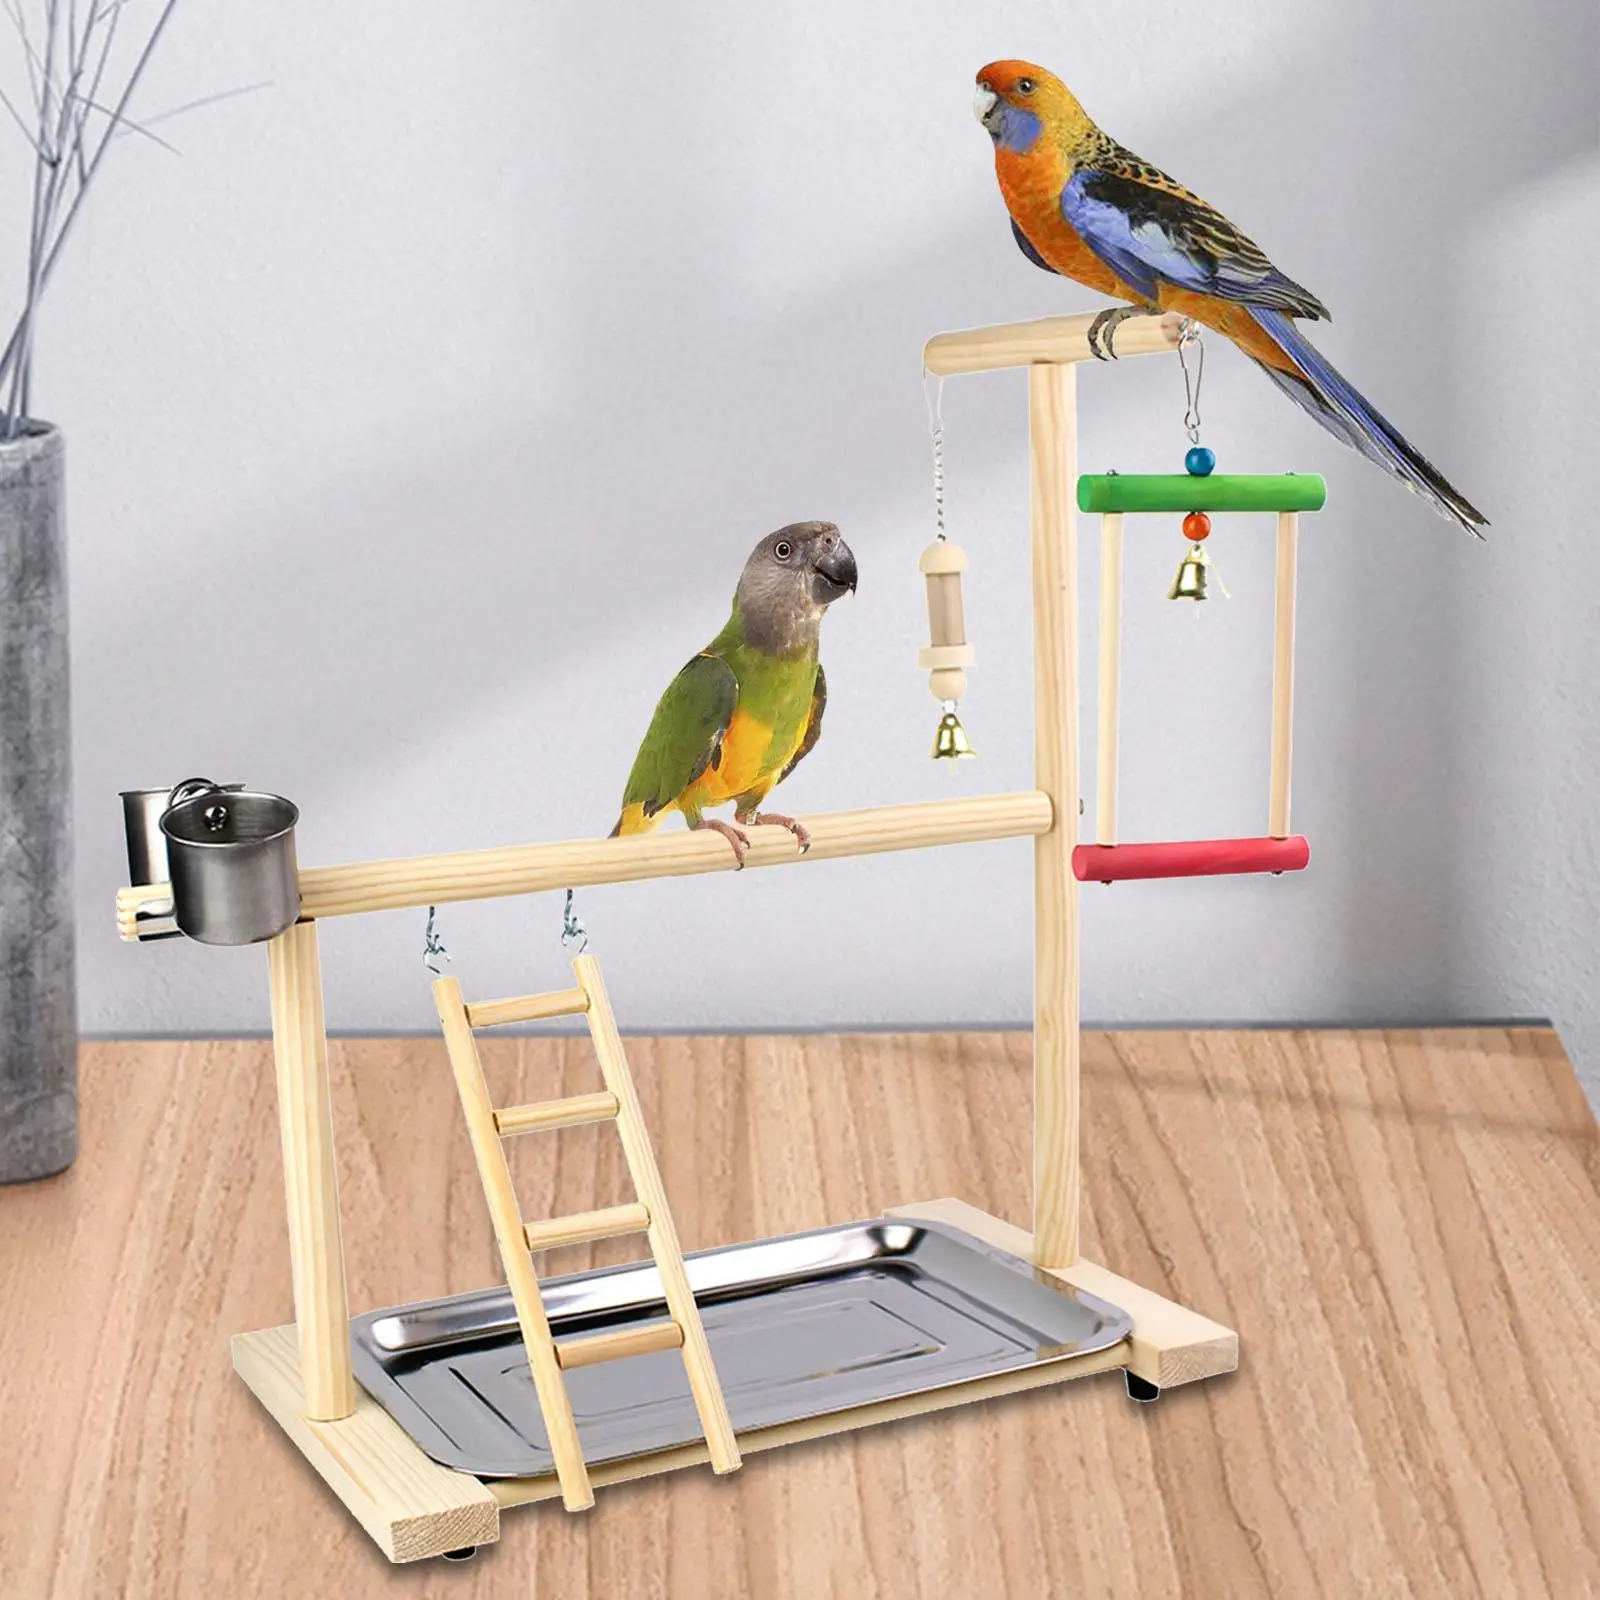 Toys Bird Perch Stand Platform Bird Playground with Feeder Cups Perch Gym